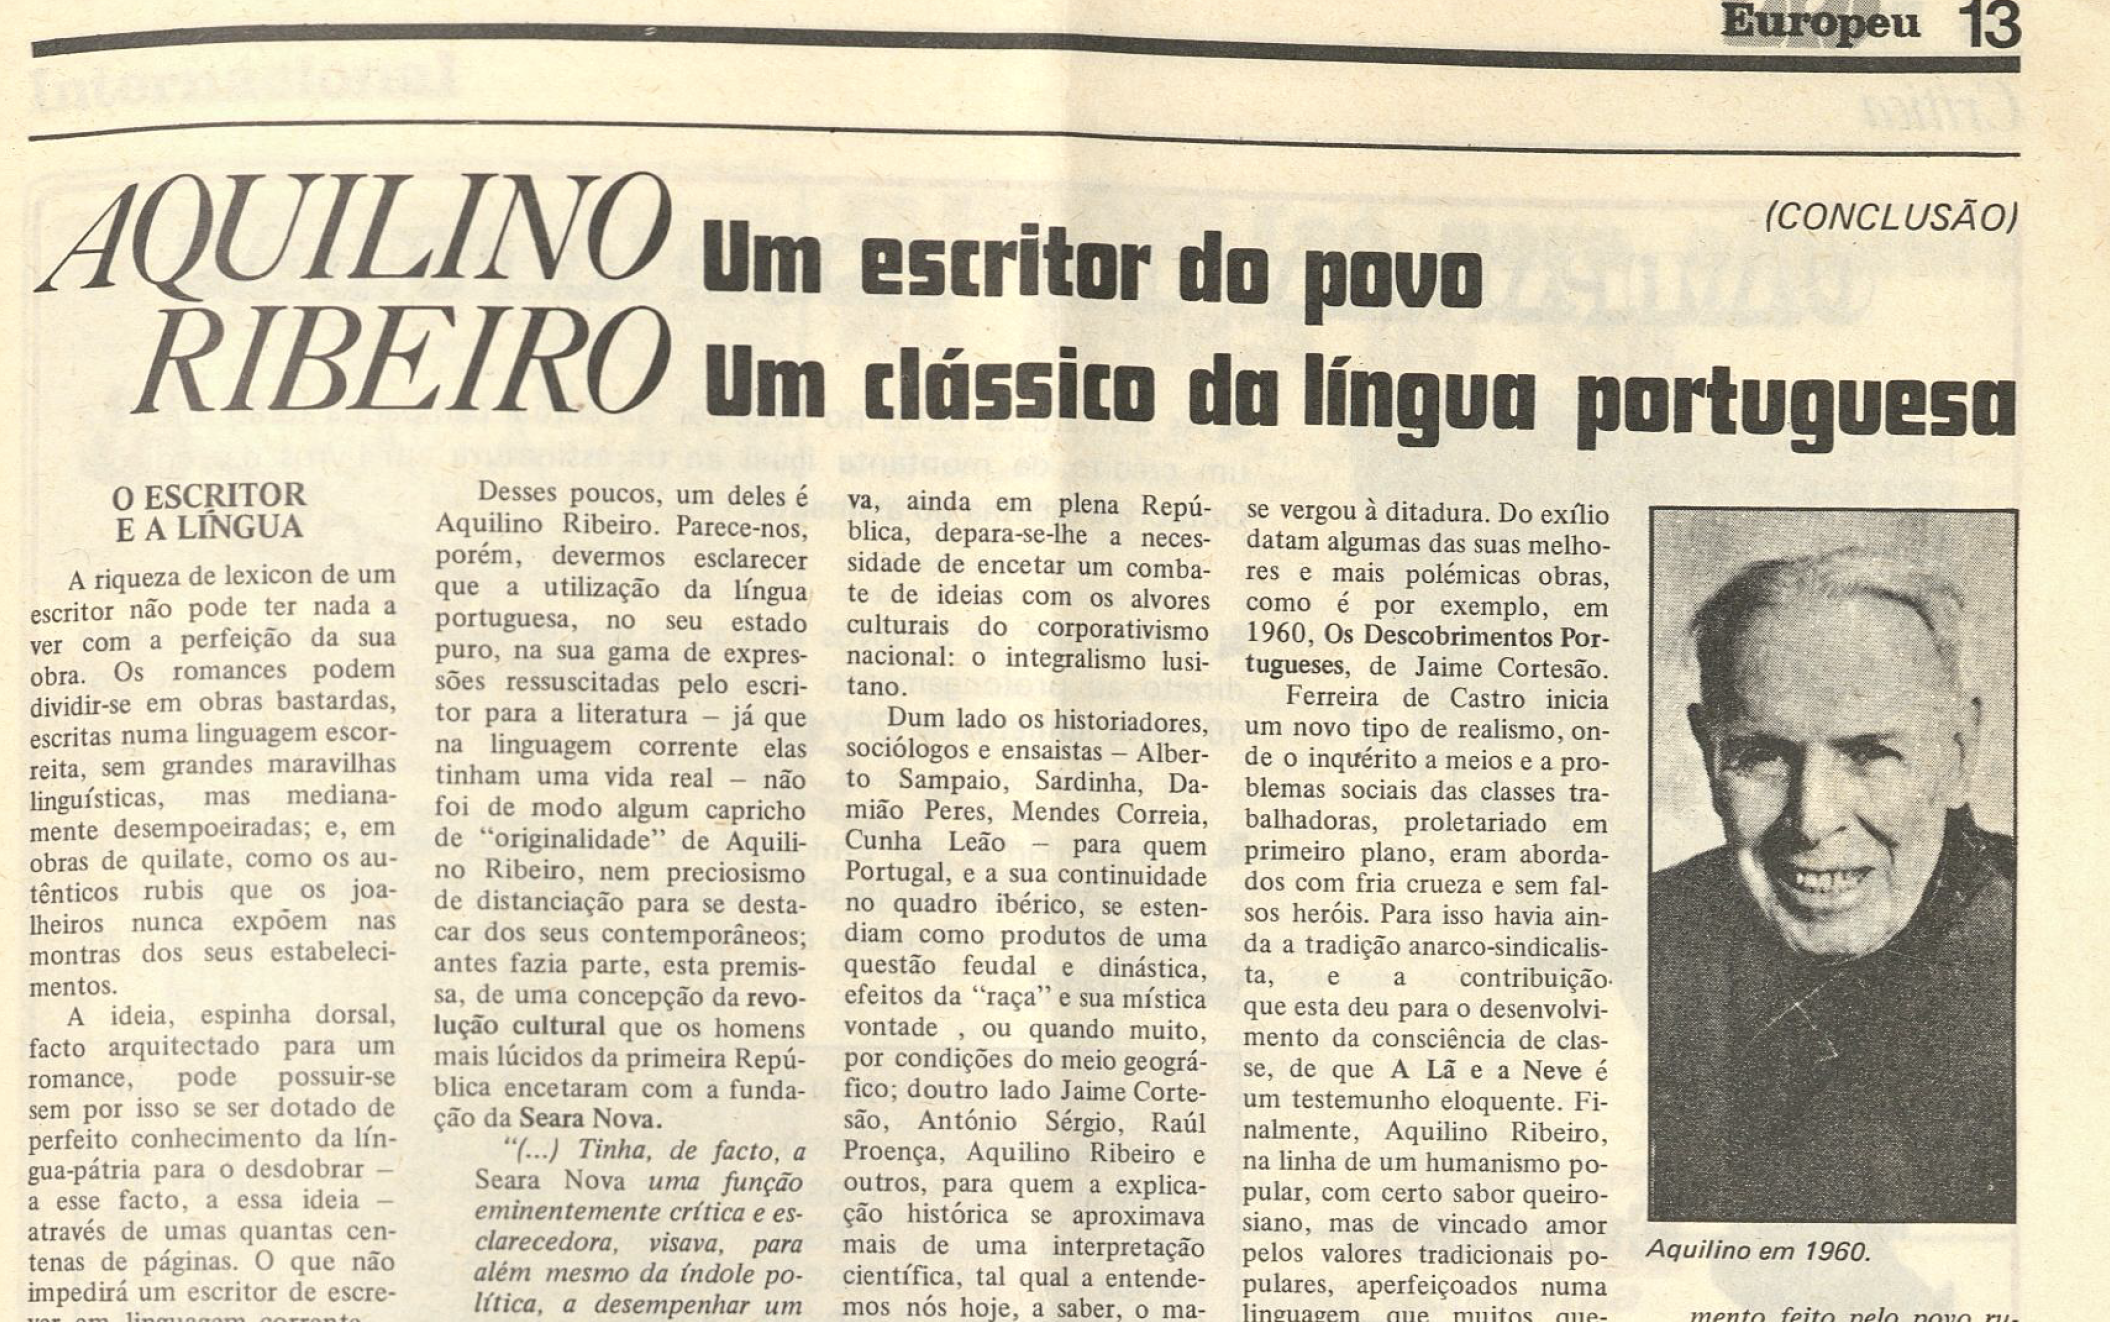 "Aquilino Ribeiro Um escritor do povo Um clássco da língua portuguesa"